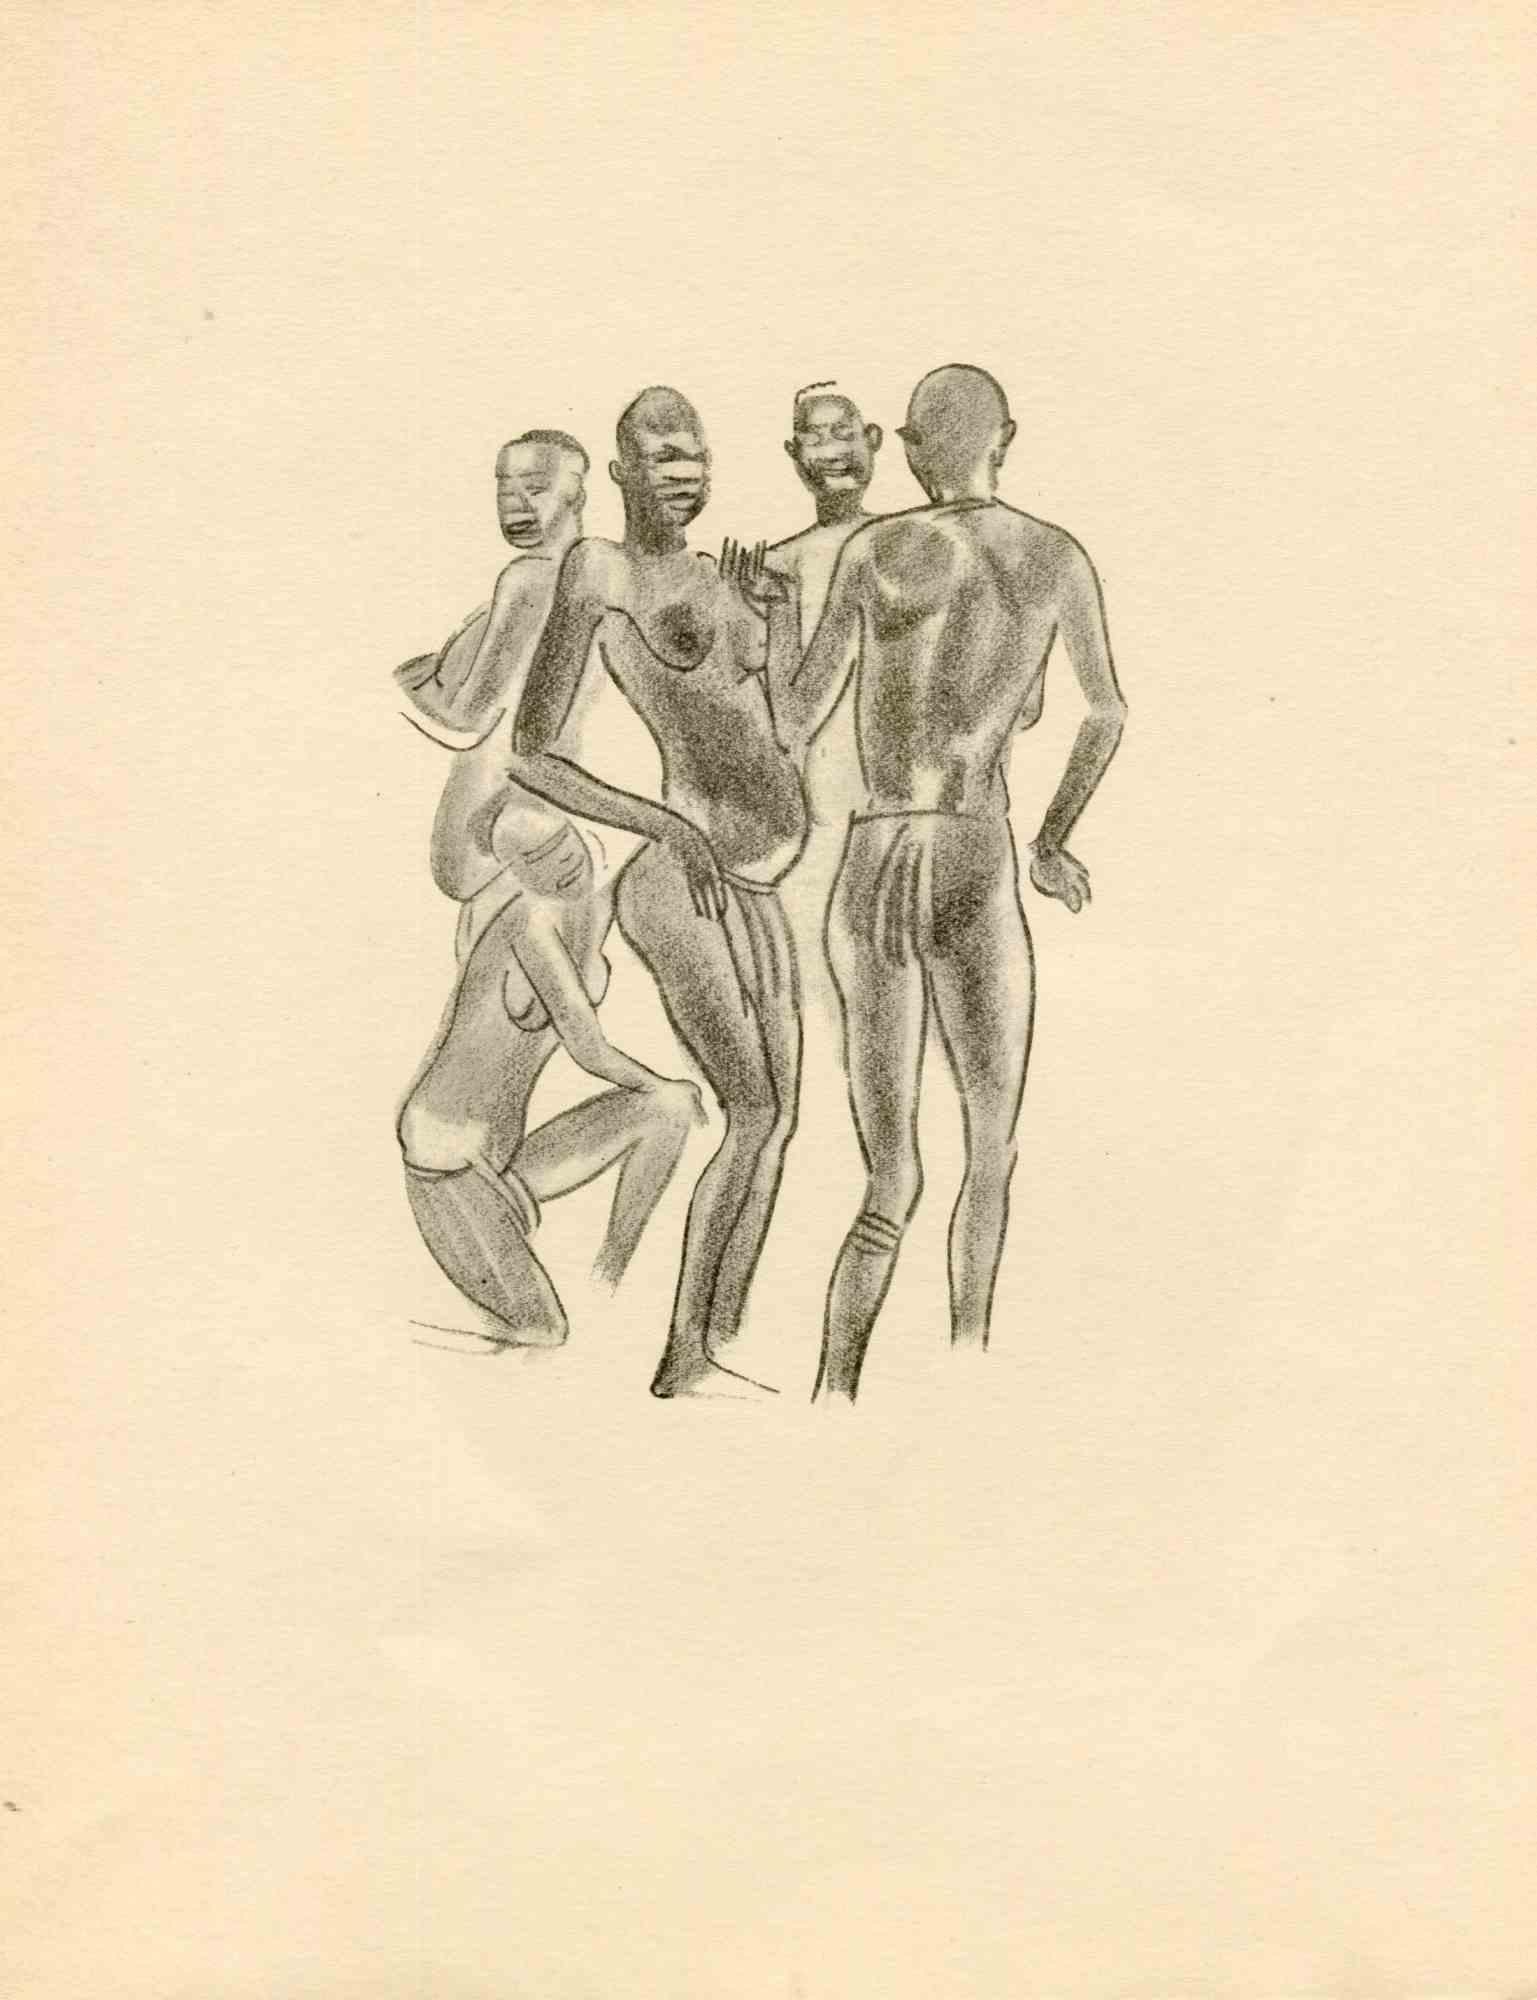 Tribal Men - Original Lithograph by Emmanuel Gondouin - 1930s